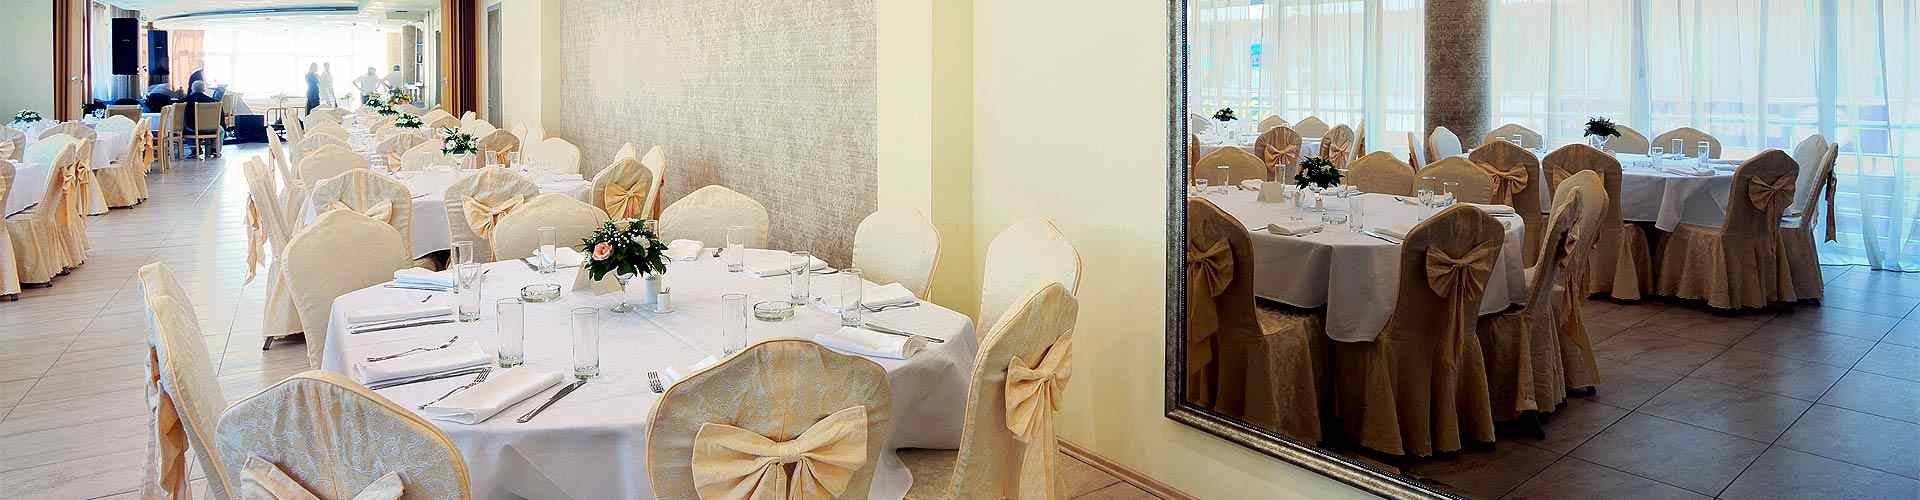 Restaurantes para bodas 2021 en Casafranca